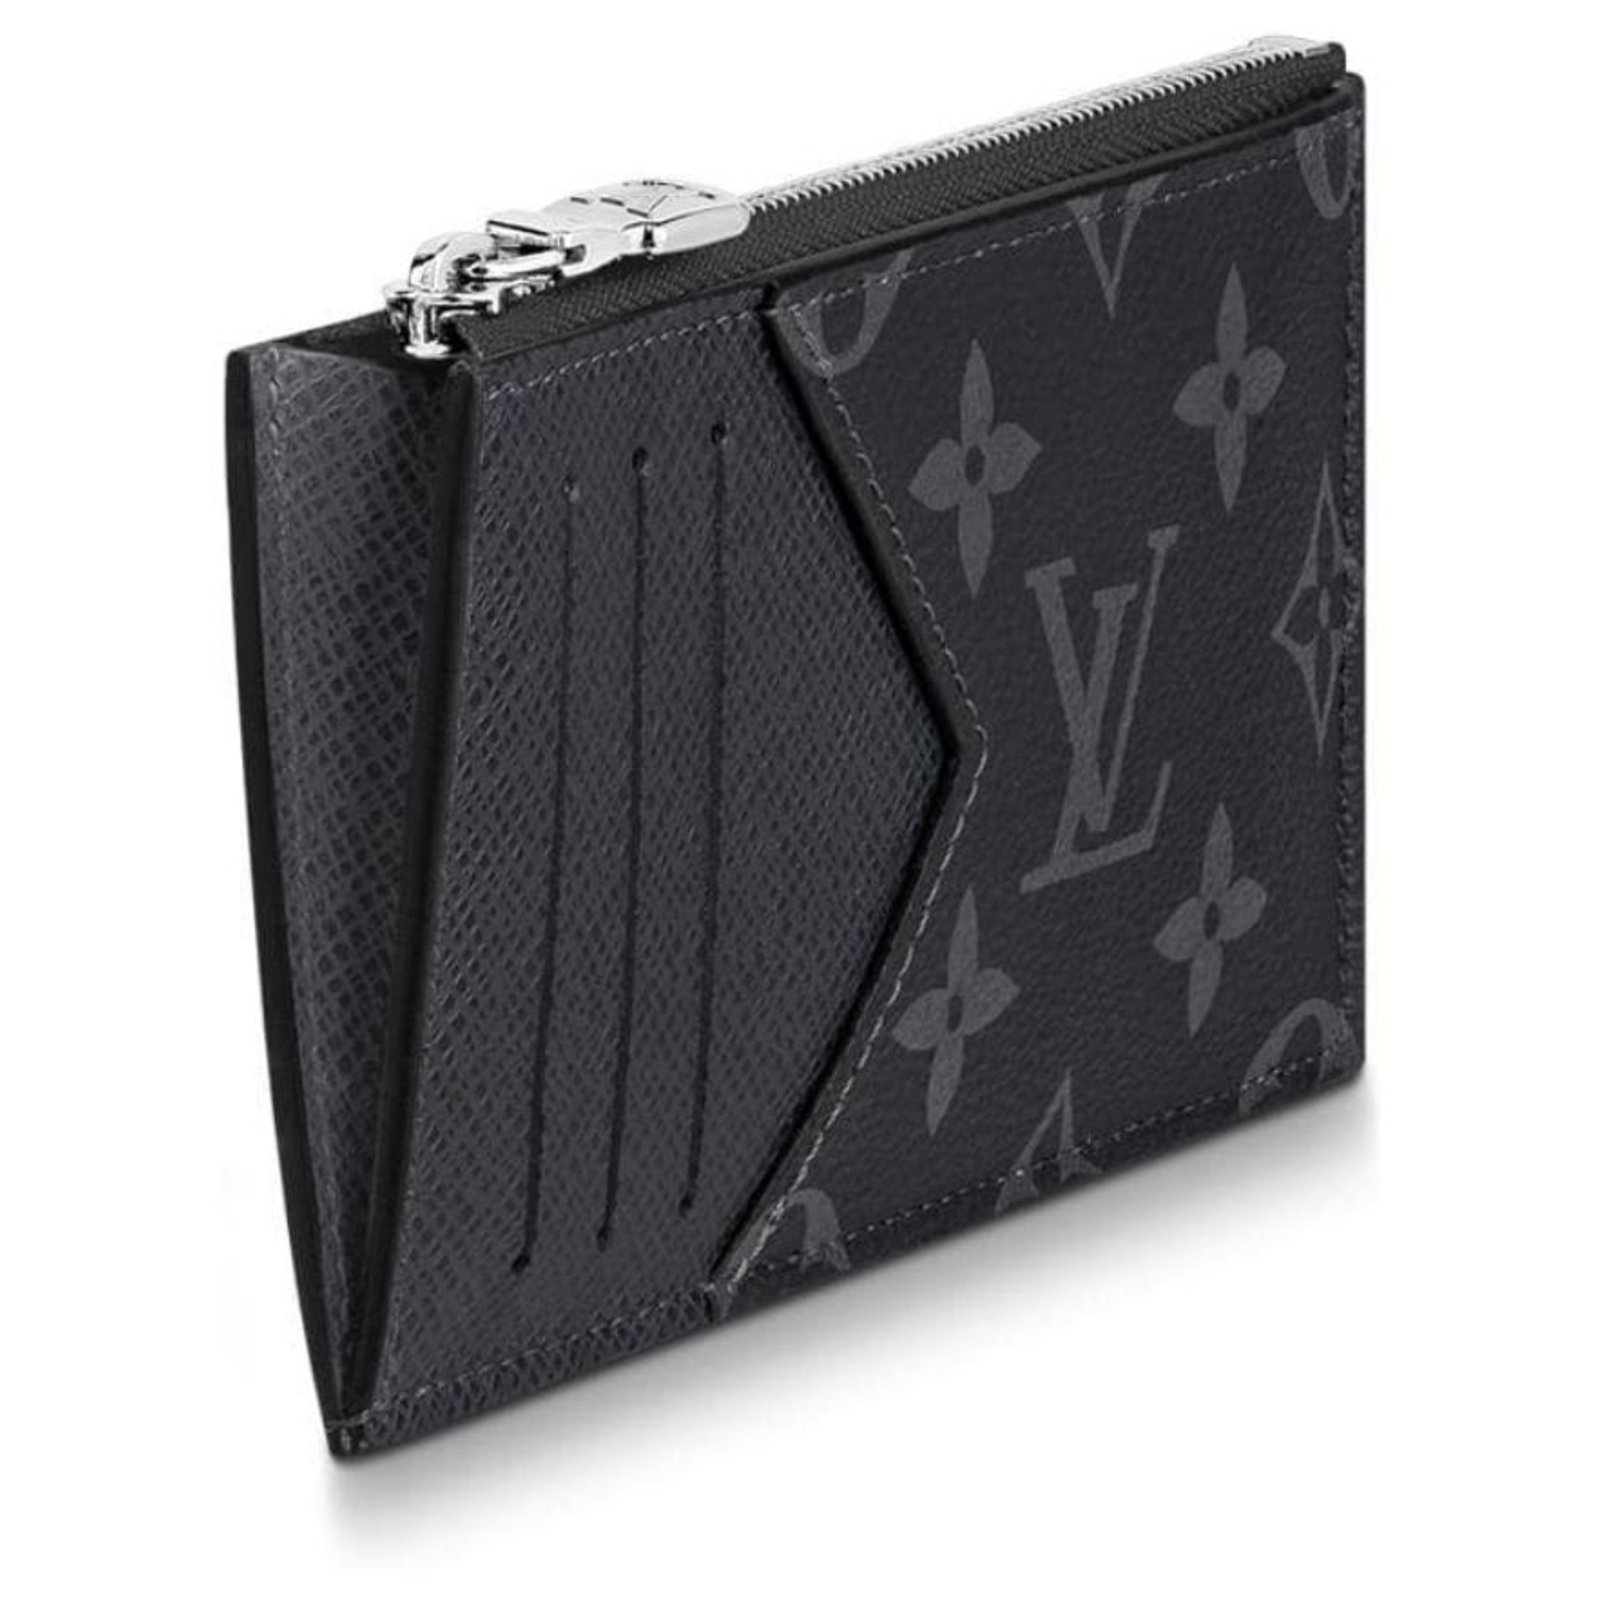 LOUIS VUITTON Louis Vuitton Ludlow Coin Case M63302 Epi Leather Noir Black  2 Fold W Hook Purse Card